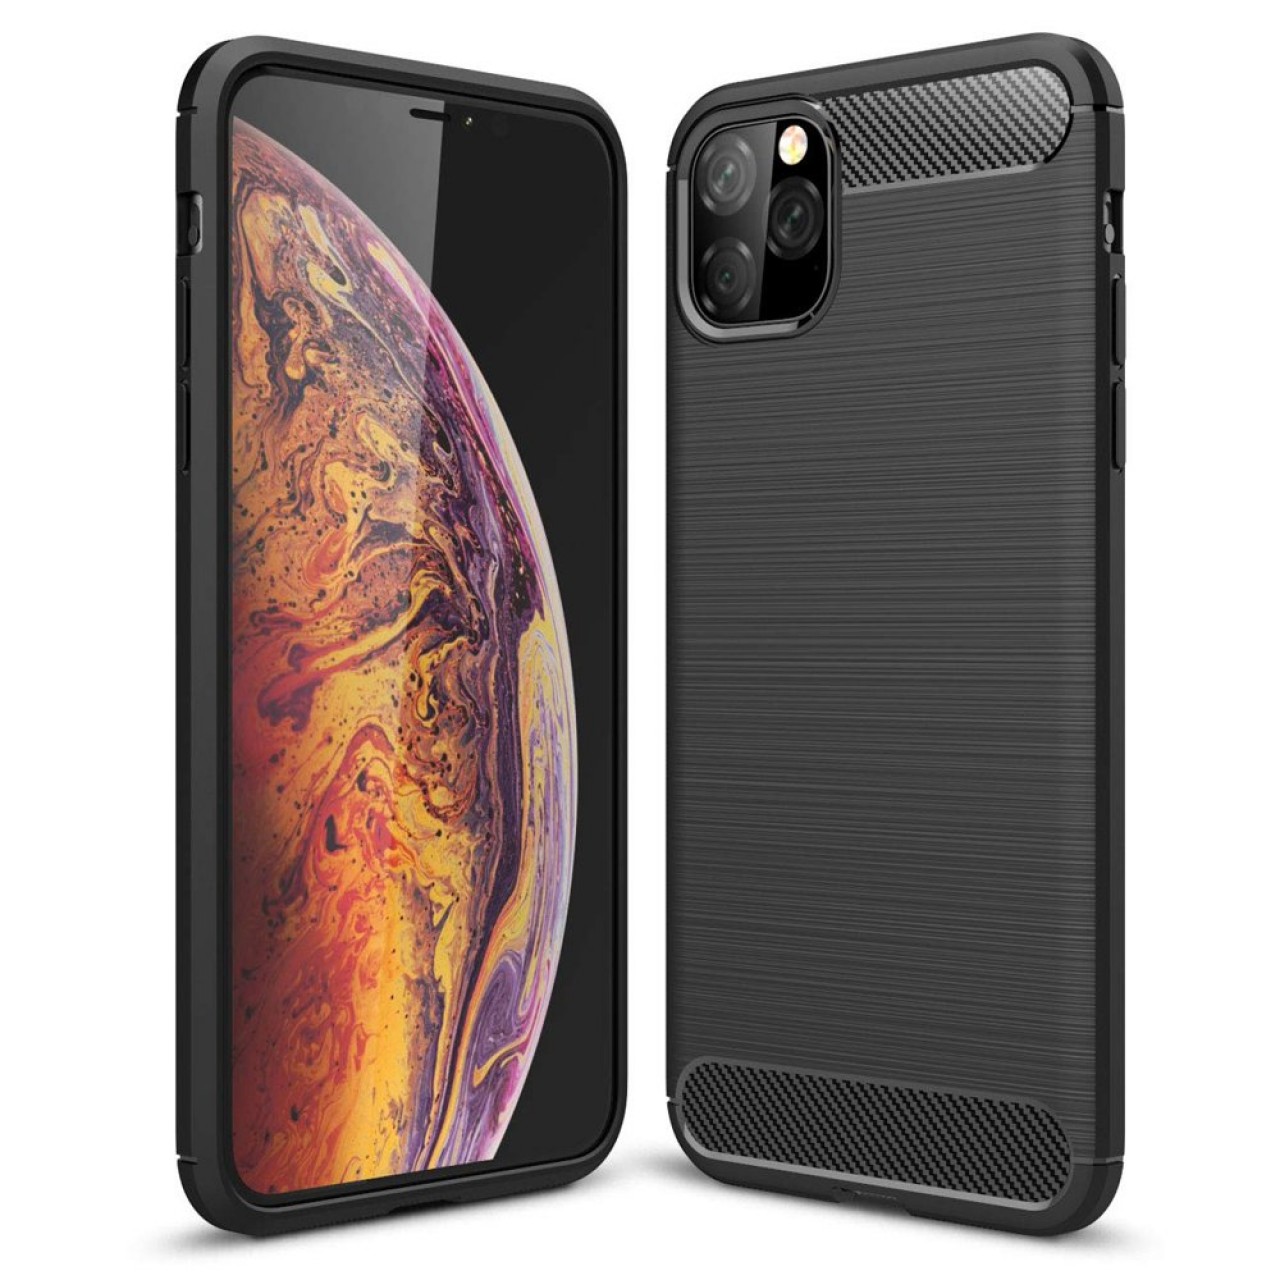 Θήκη iPhone 11 Pro Max Σιλικόνης TPU Brushed Carbon Fiber - 4875 - Μαύρο - OEM